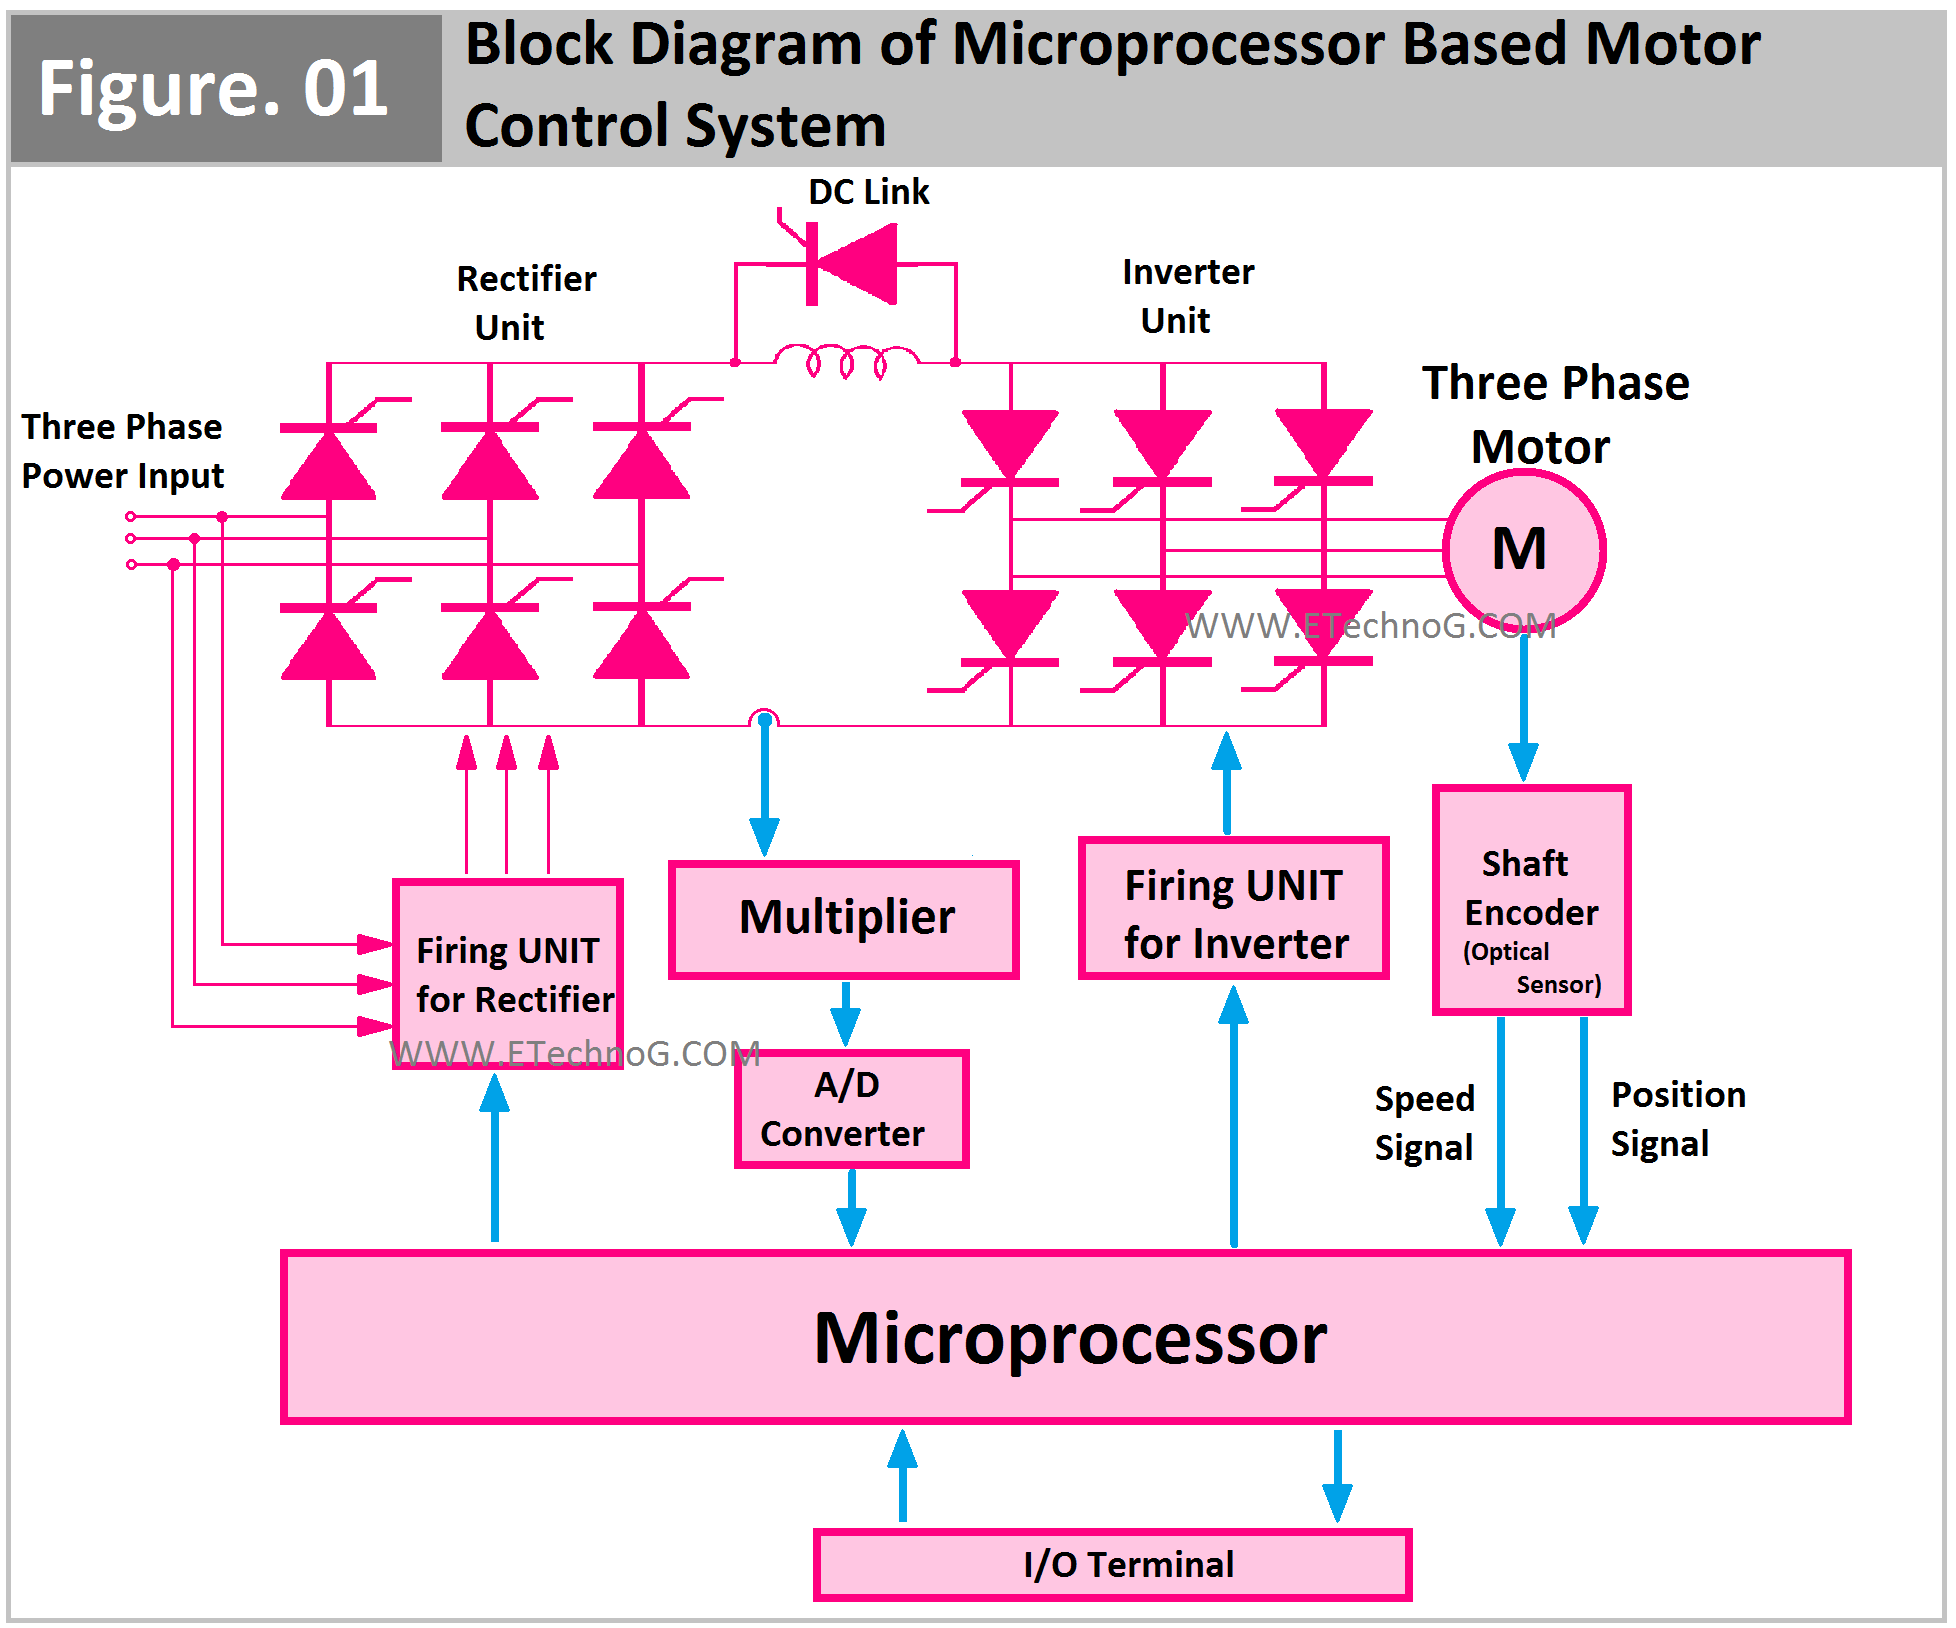 Block Diagram of Microprocessor Based Motor Control System Block Diagram